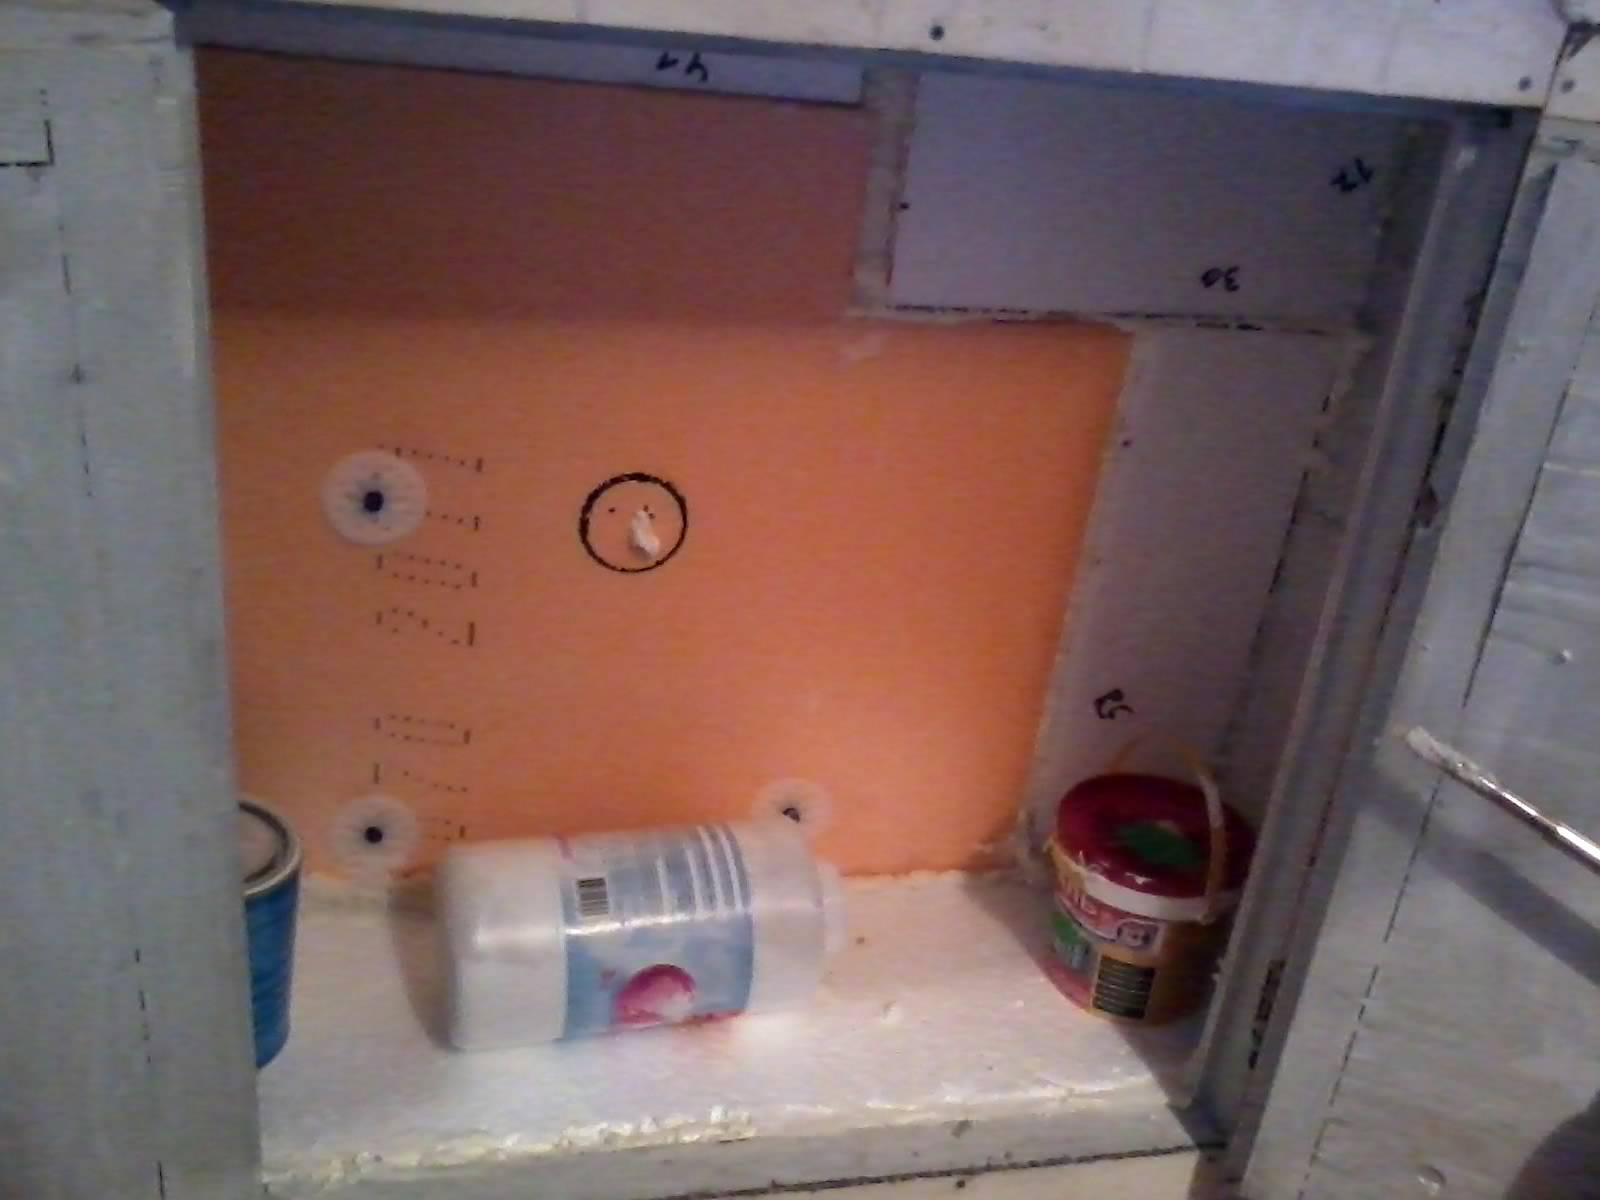 Хрущевский холодильник» на кухне: улучшение или замена?